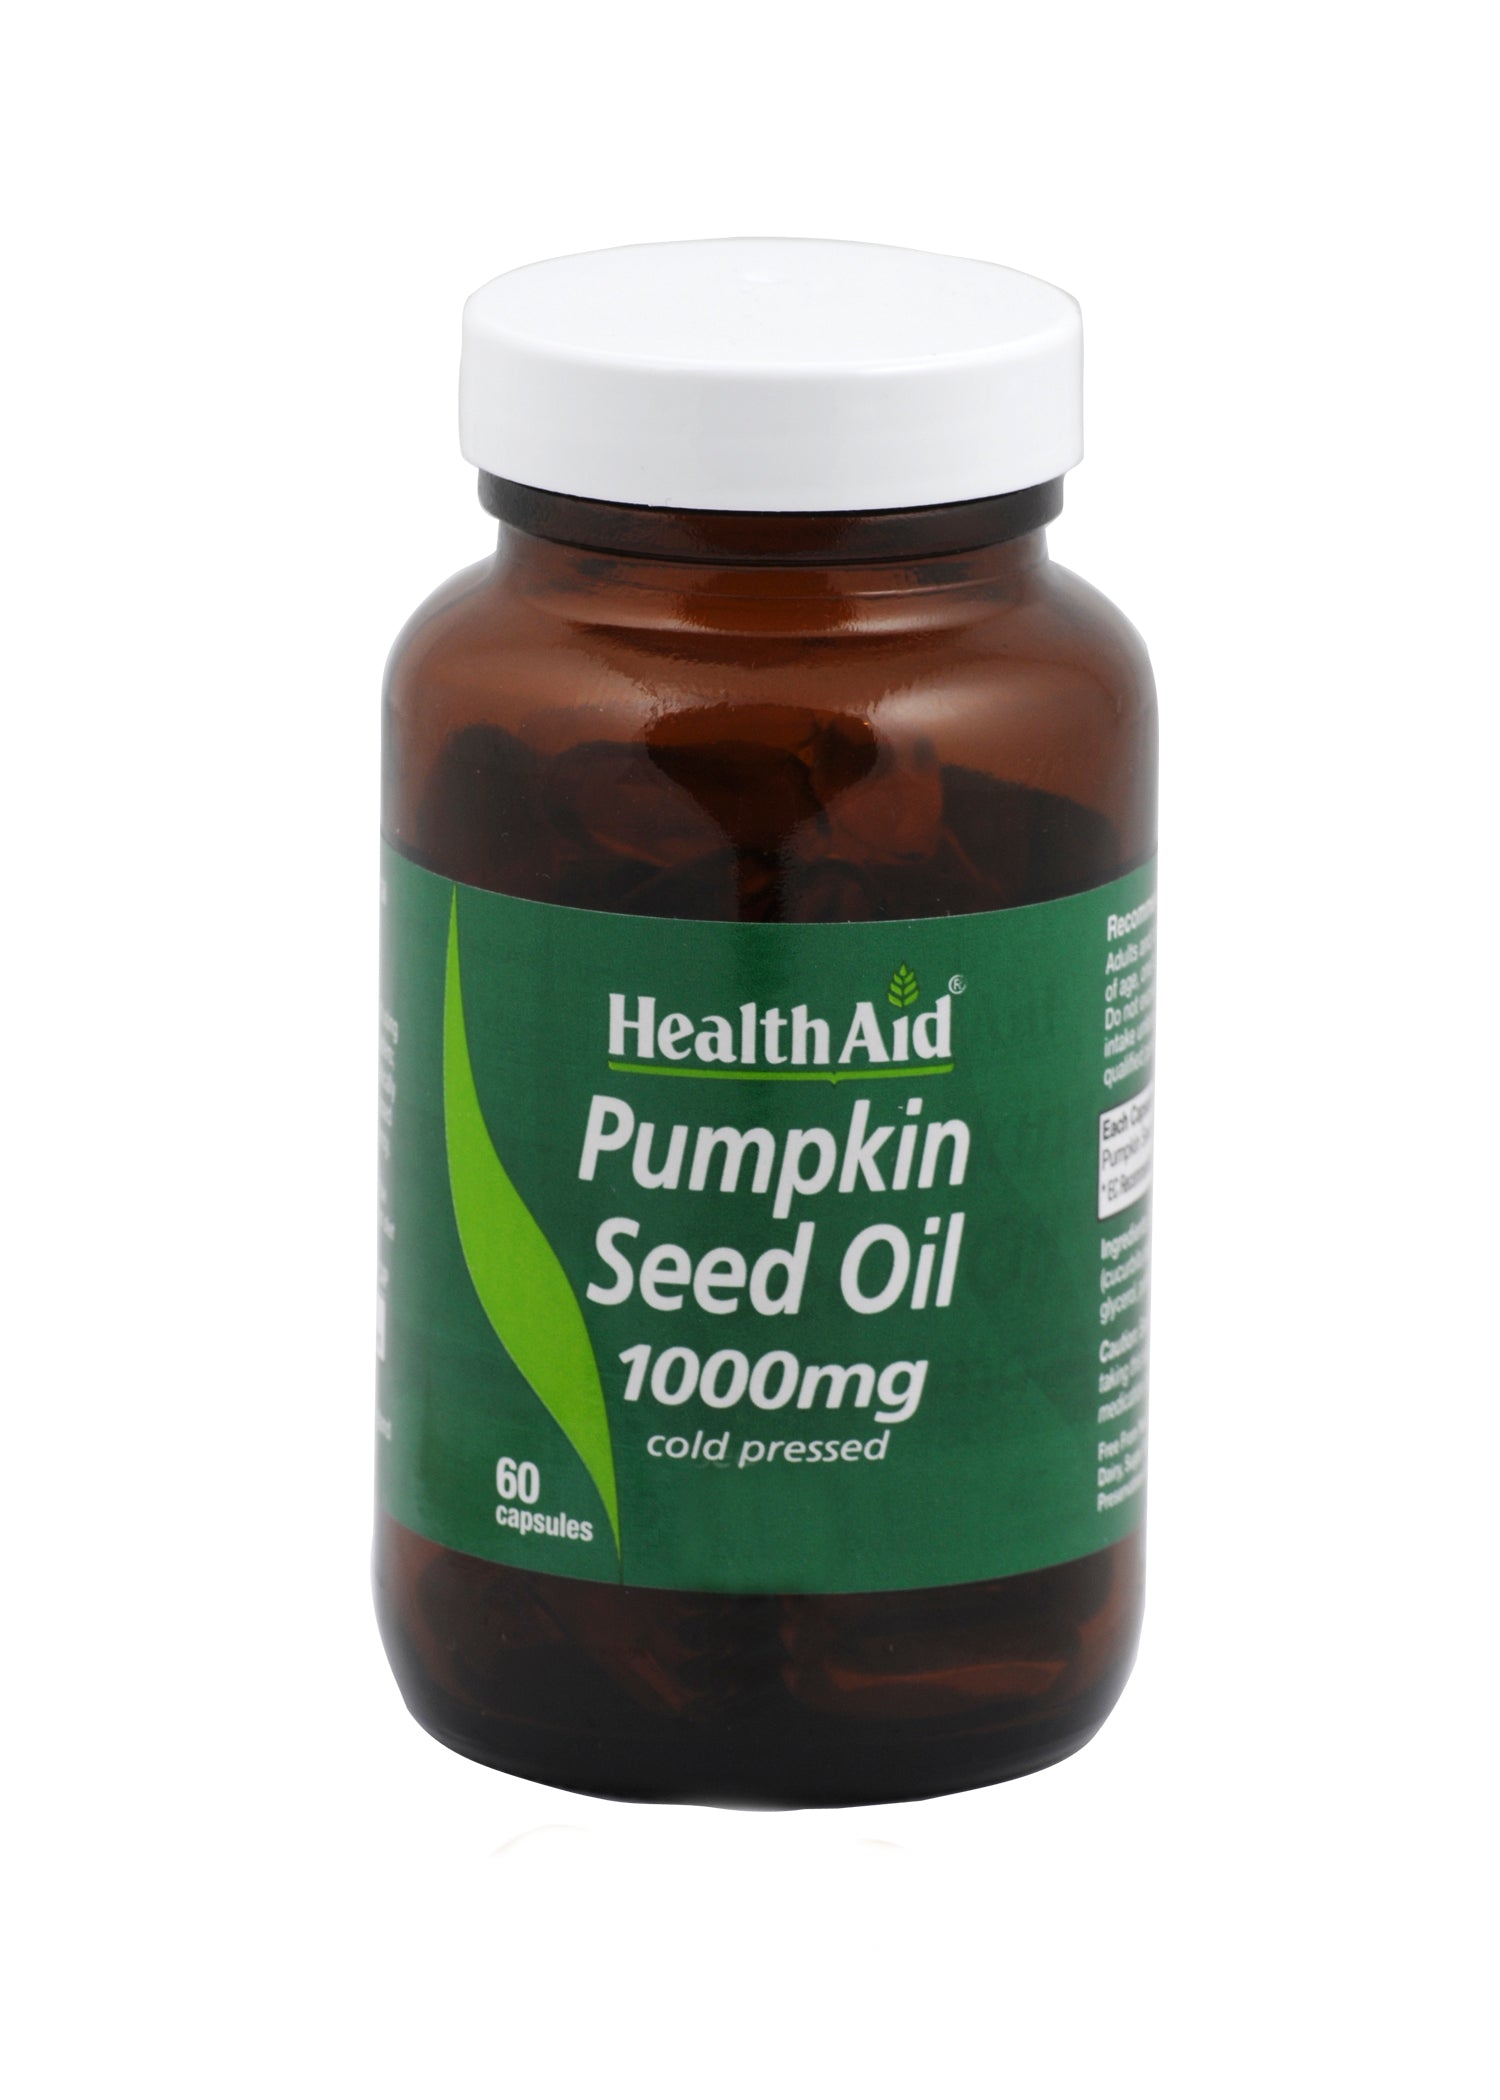 Health Aid Pumpkin Seed Oil 1000mg 60's